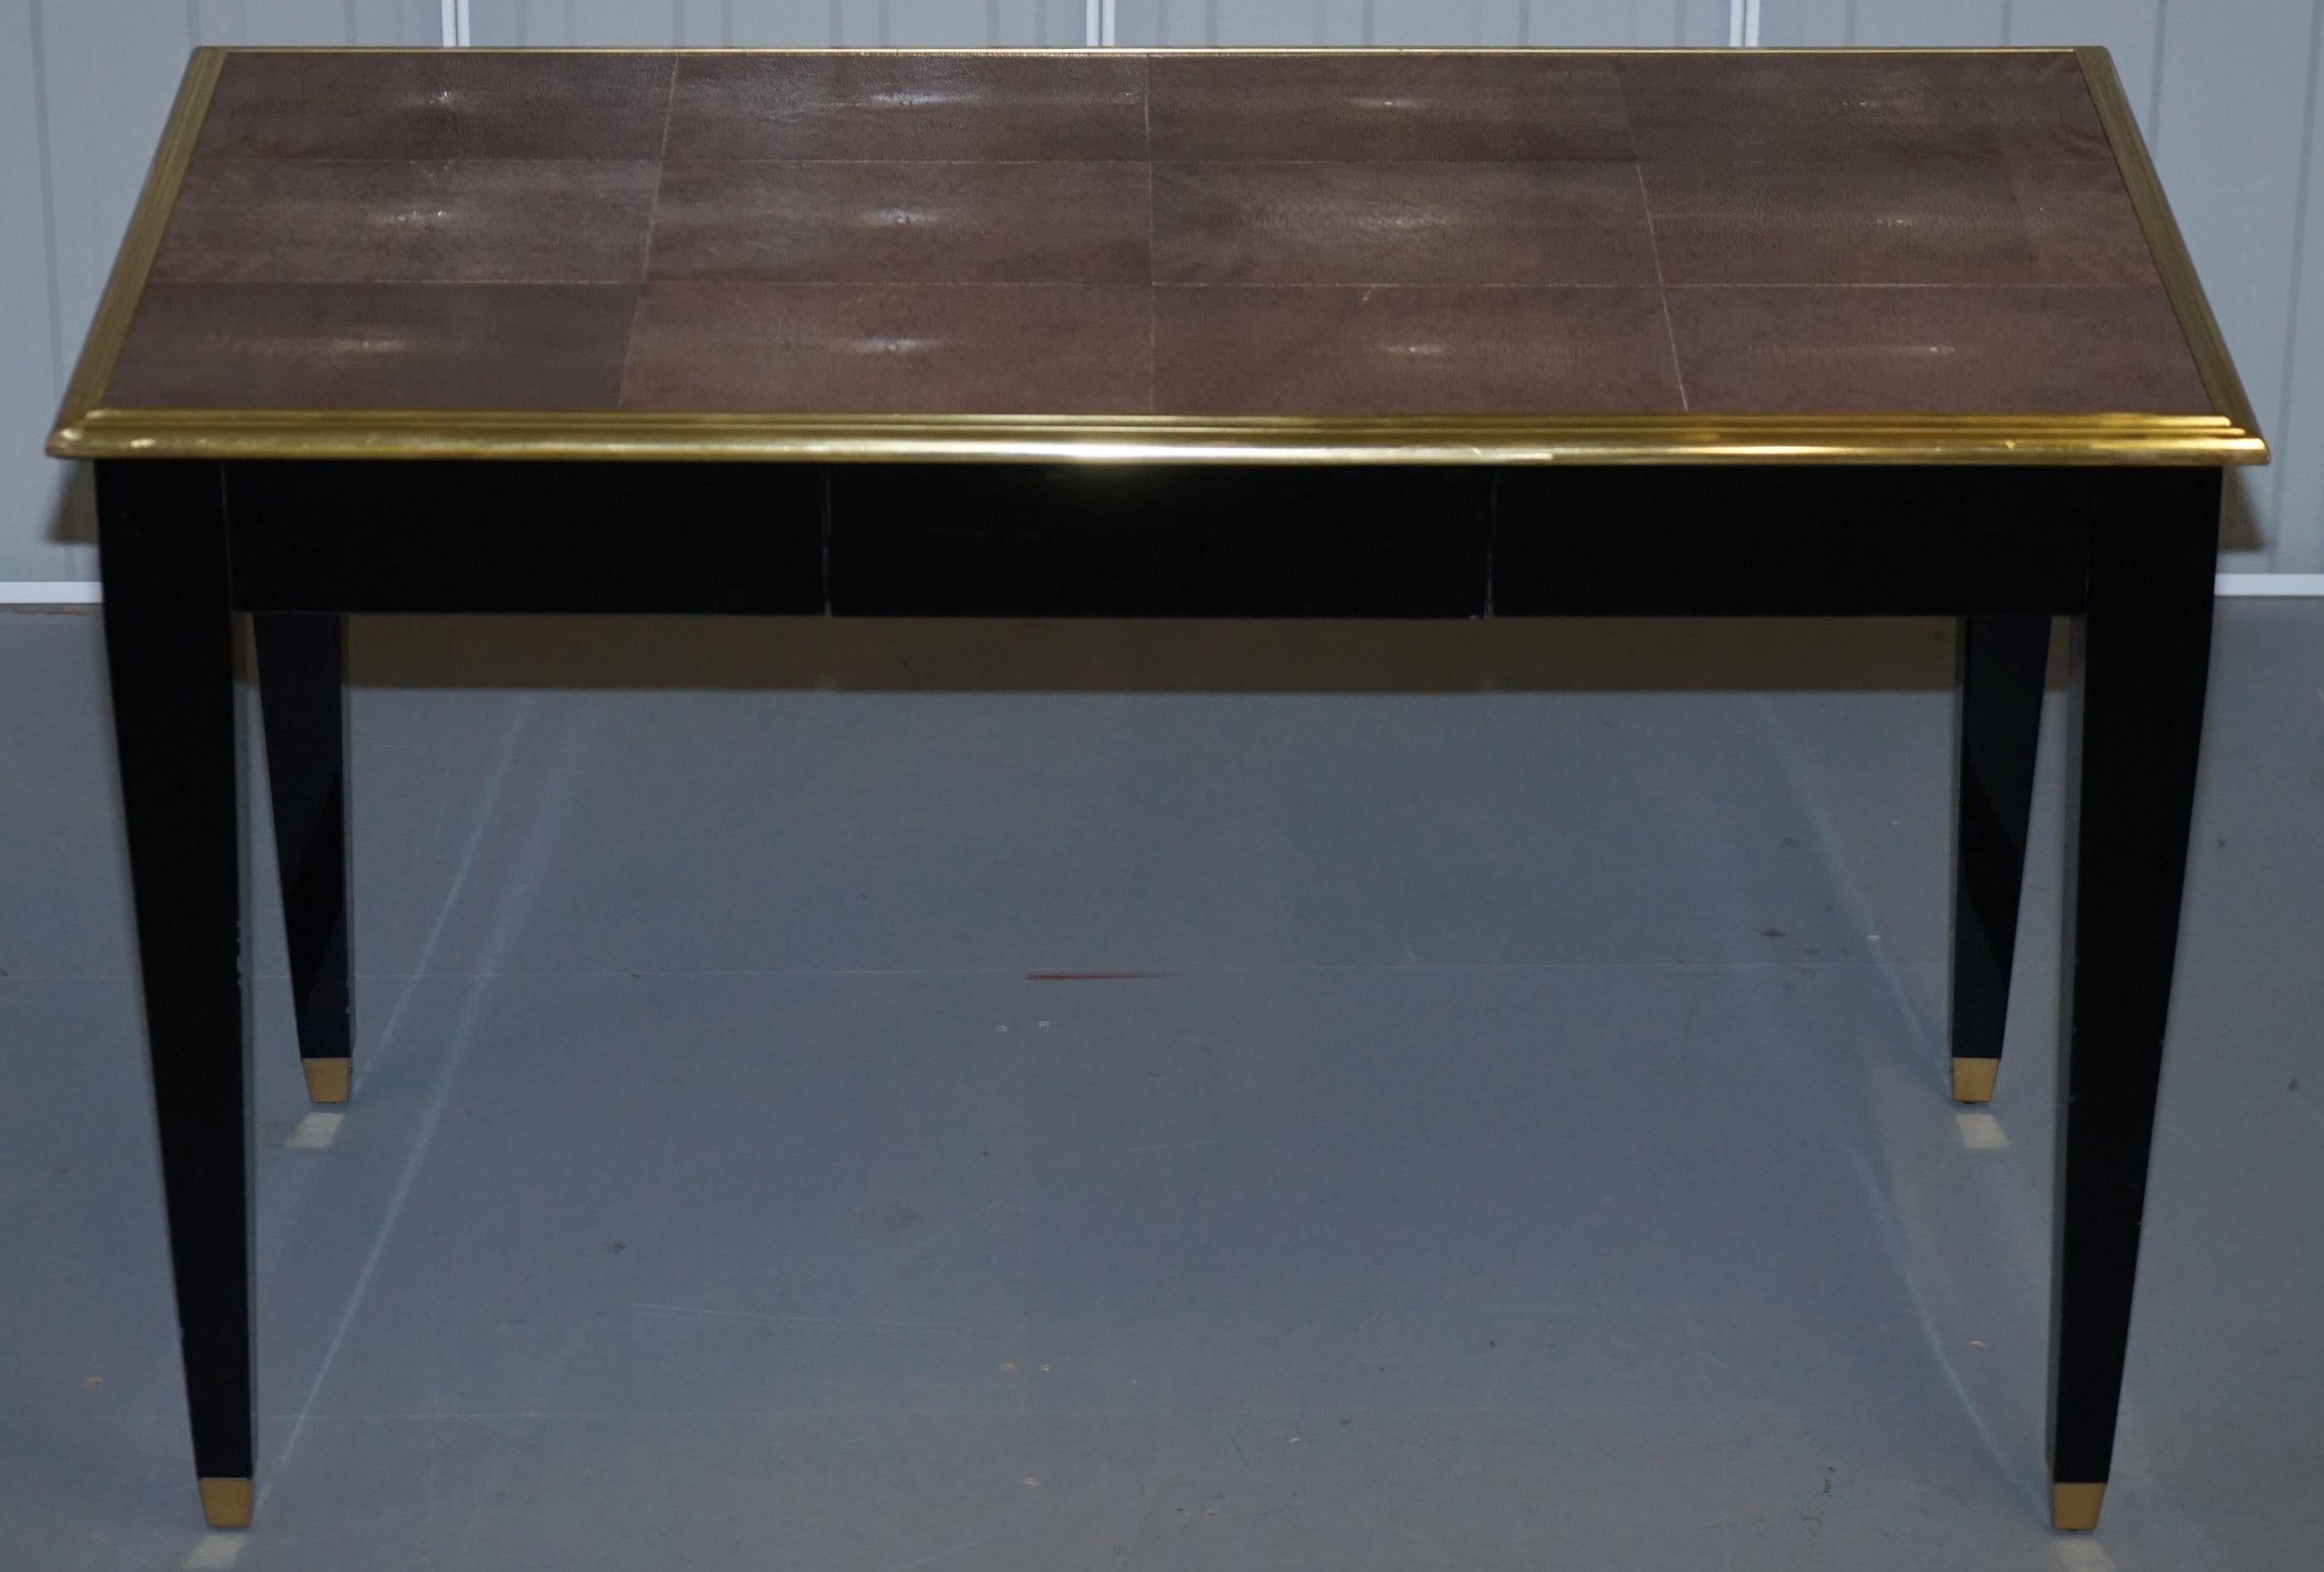 Wir freuen uns, diesen atemberaubenden Schreibtisch mit schwarz lackiertem Chagrin und vergoldeten Metalldetails zum Verkauf anbieten zu können (UVP £13.000). 

Dies ist ein sehr solider Schreibtisch. Shagreen ist die Haut eines Hais oder Rochens,